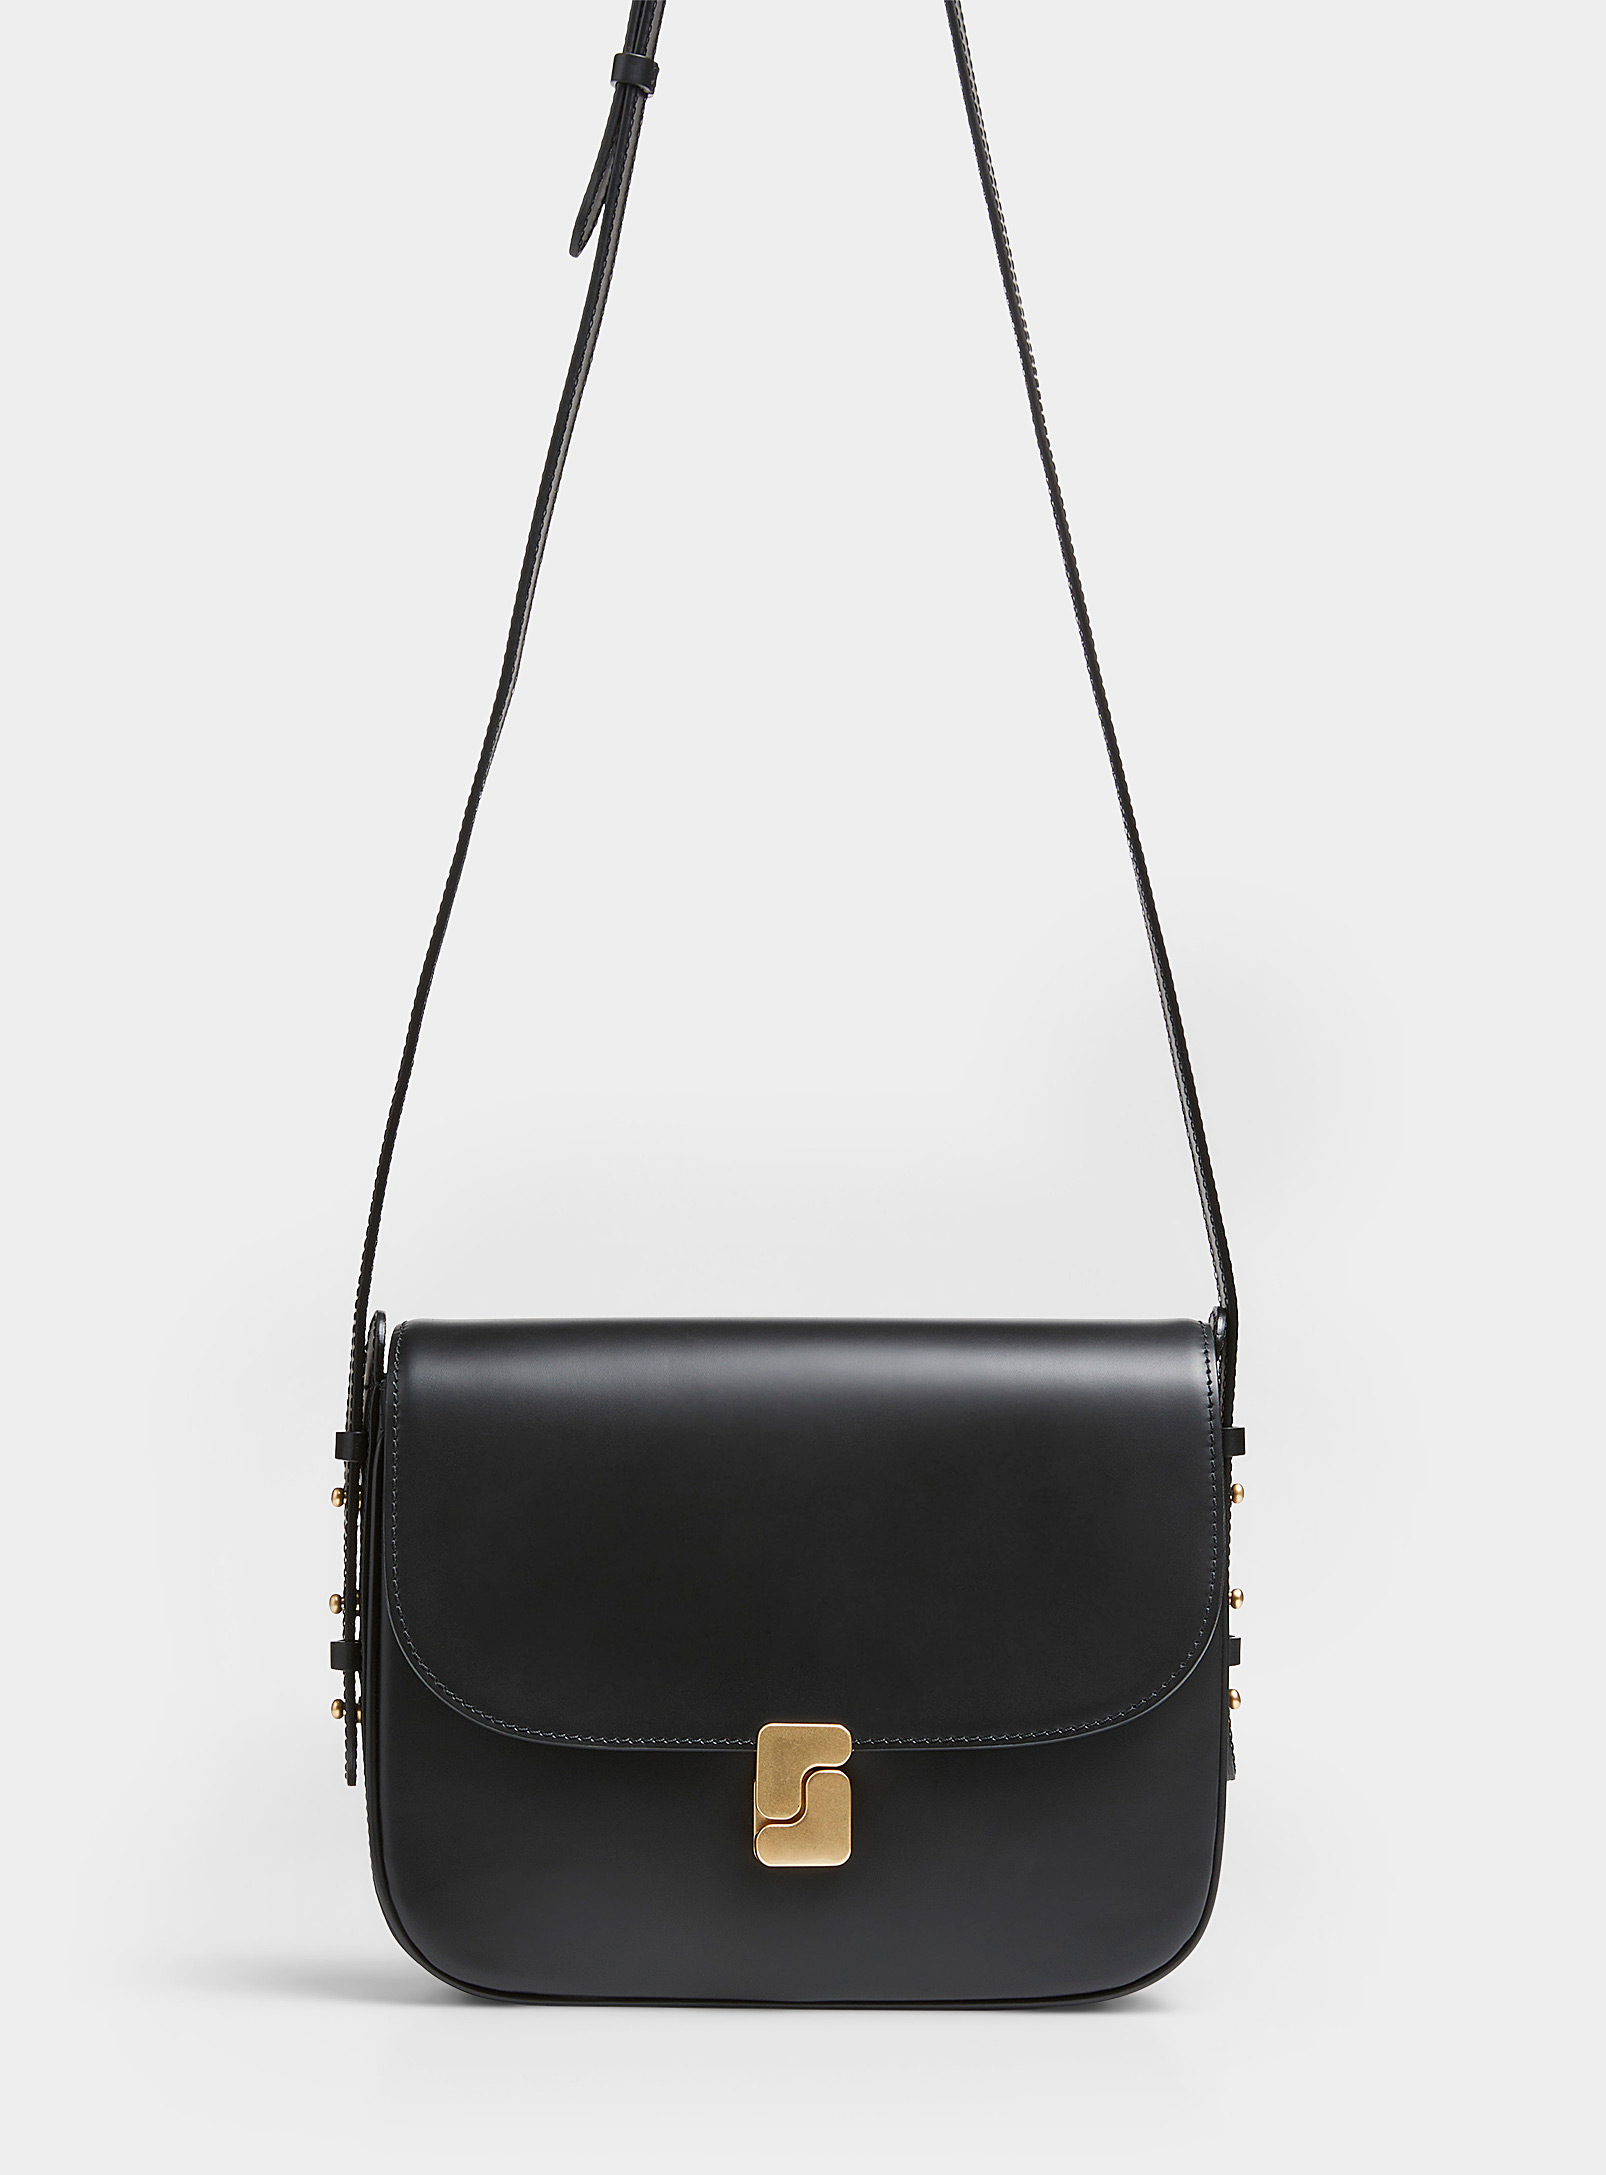 Soeur Bellissima Leather Saddle Bag In Black